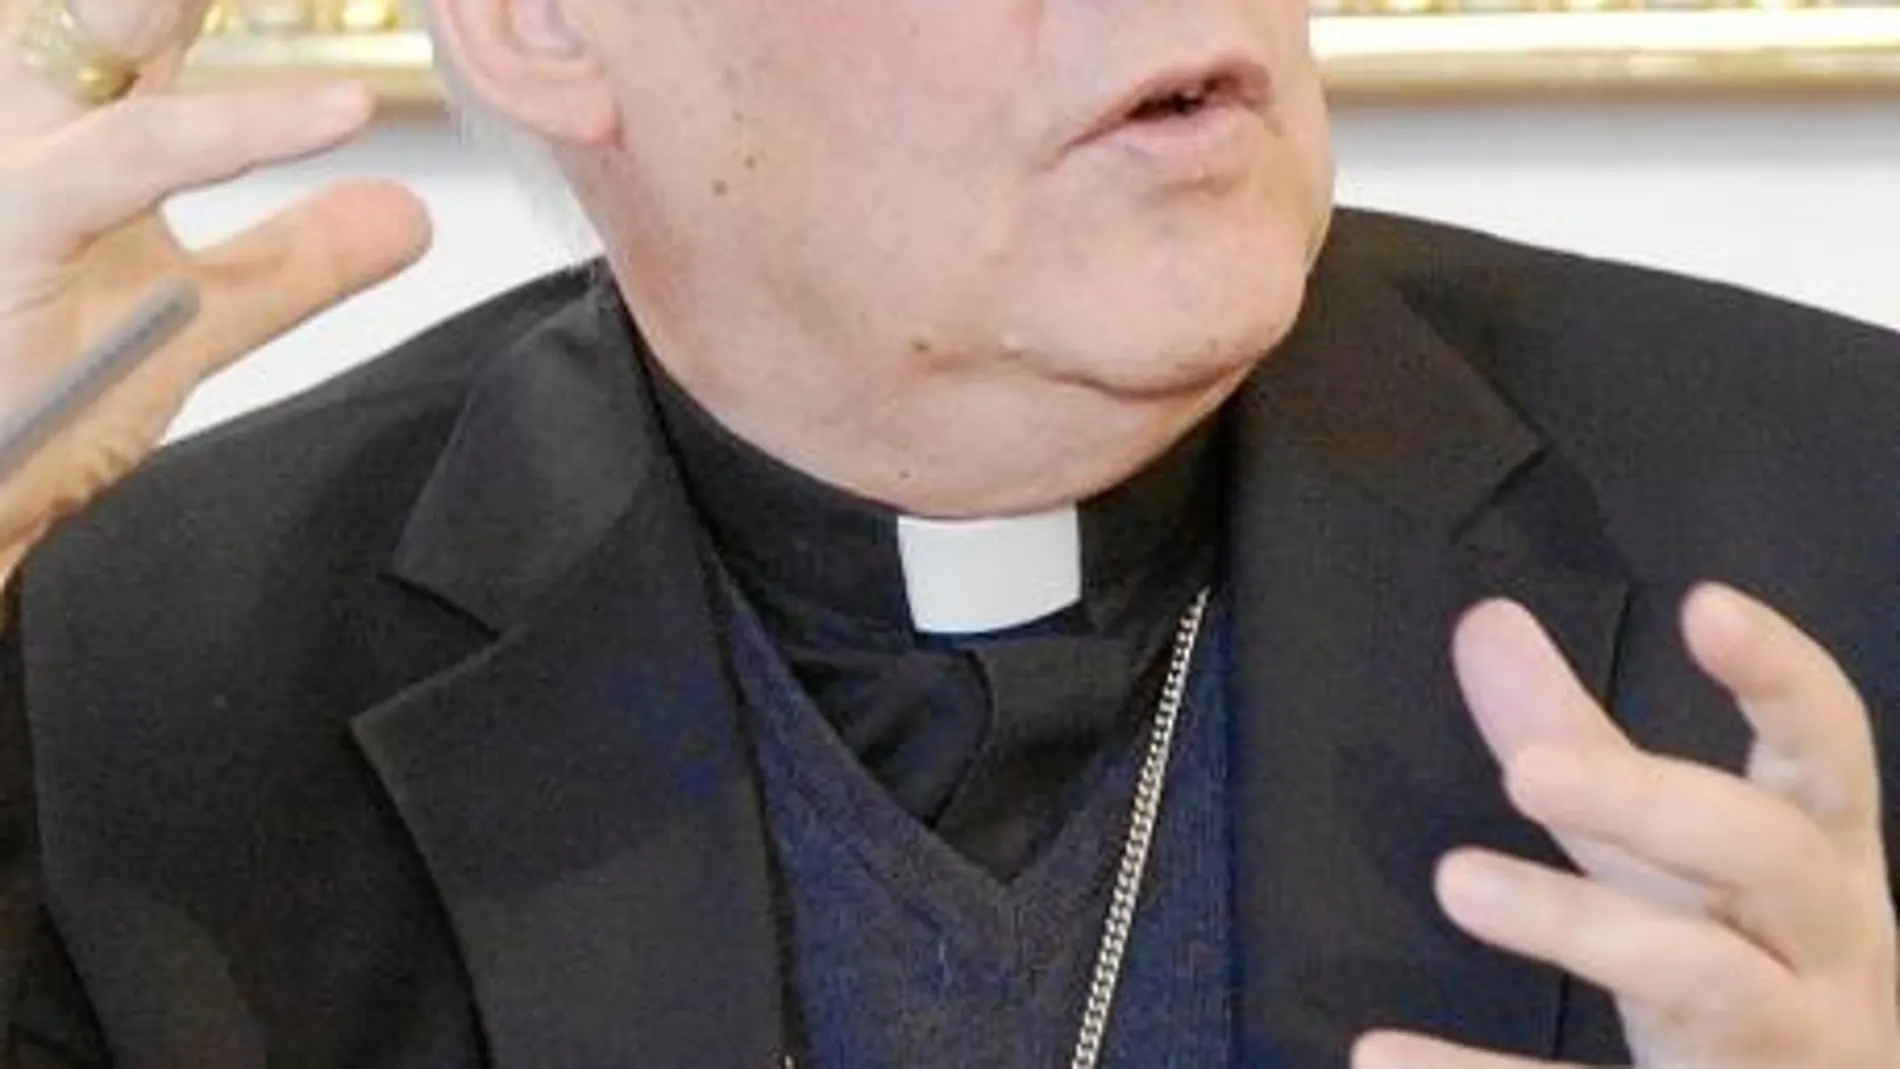 Cordes fue hasta 2010 el «ministro de solidaridad» vaticano